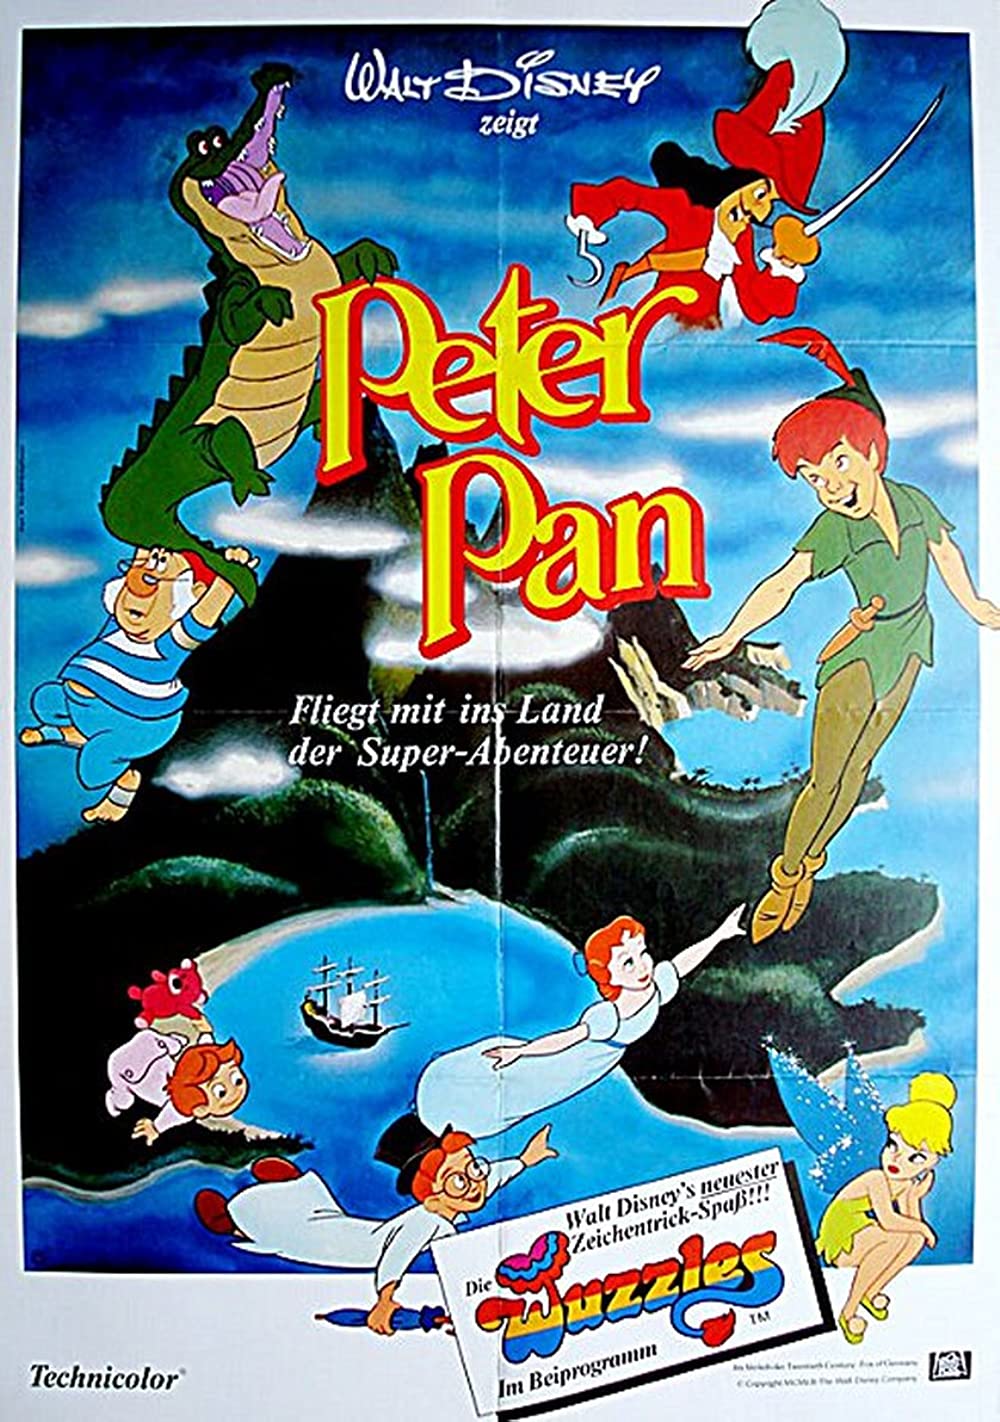 Filmbeschreibung zu Peter Pan (1953)